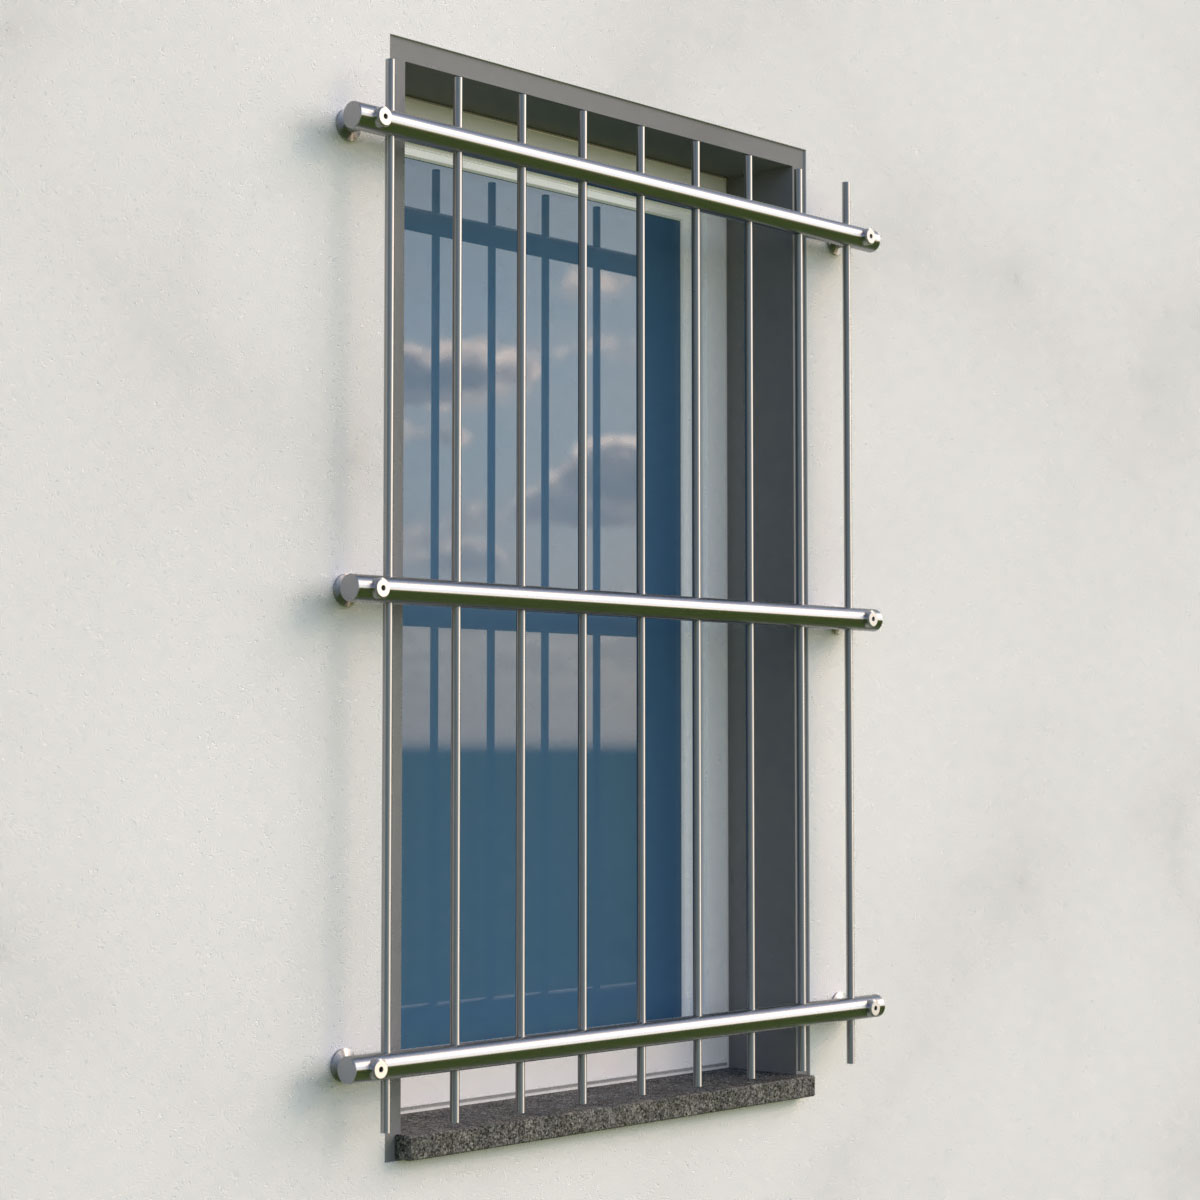 Fenstergitter exklusiv in Edelstahl - Montage vor Laibung